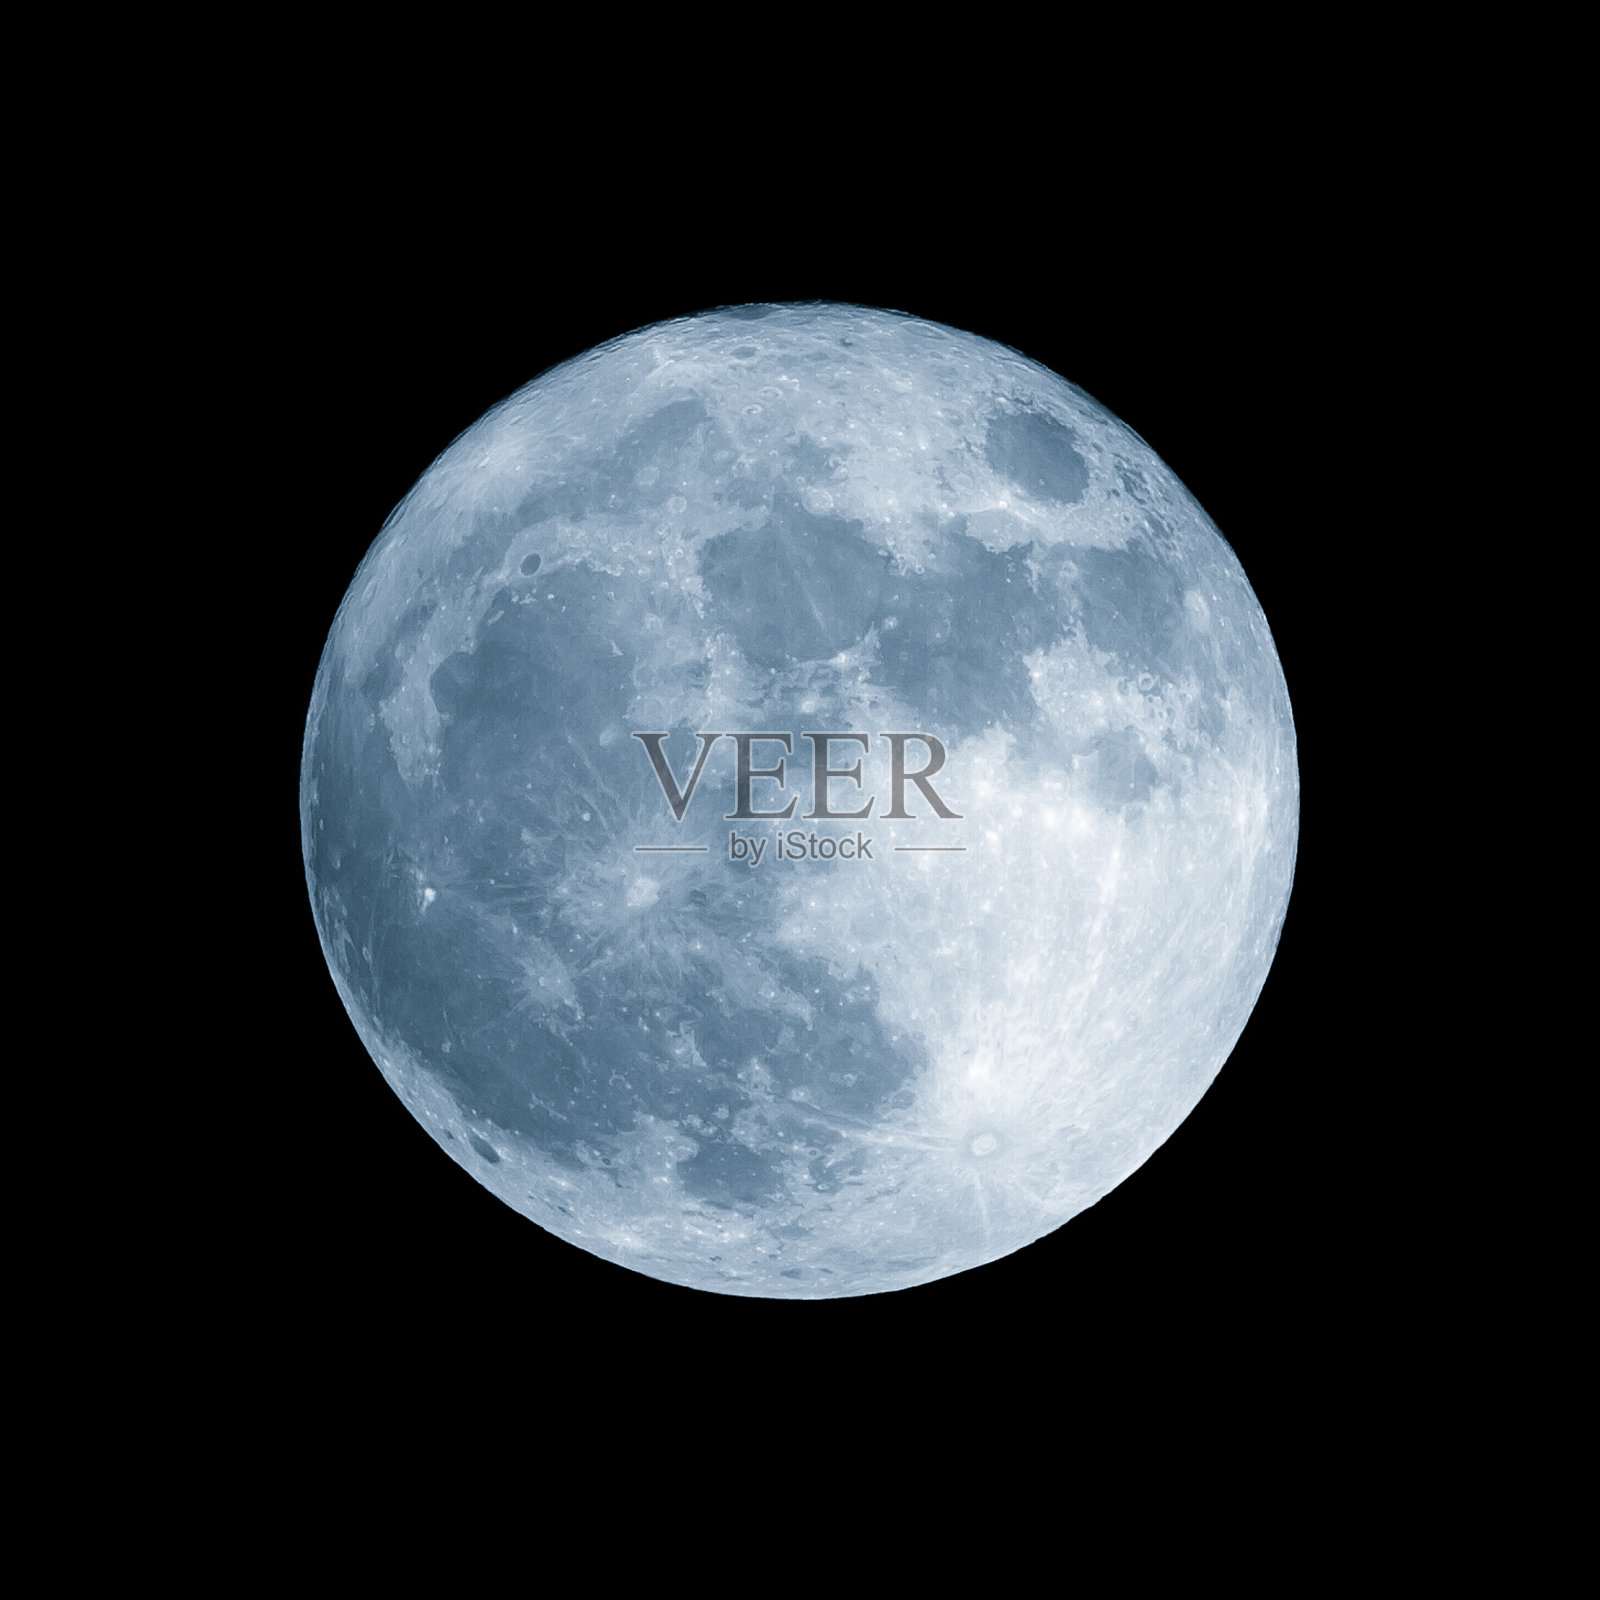 远地点满月。2016年11月14日的超级月亮是70年来最大最亮的月亮照片摄影图片